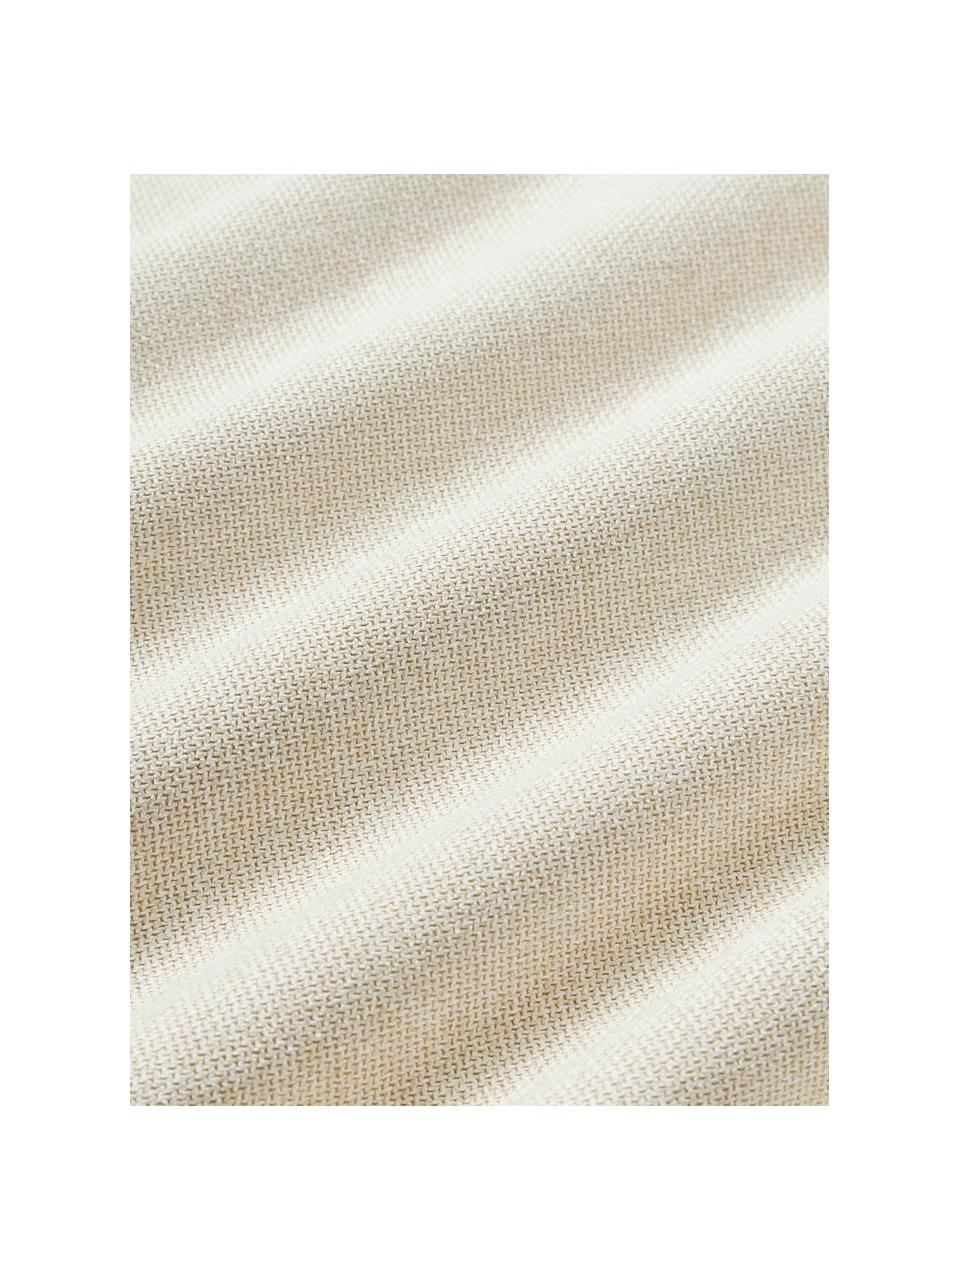 Cuscino decorativo Lennon, Rivestimento: 100% poliestere, Tessuto bianco crema, Larg. 50 x Lung. 80 cm